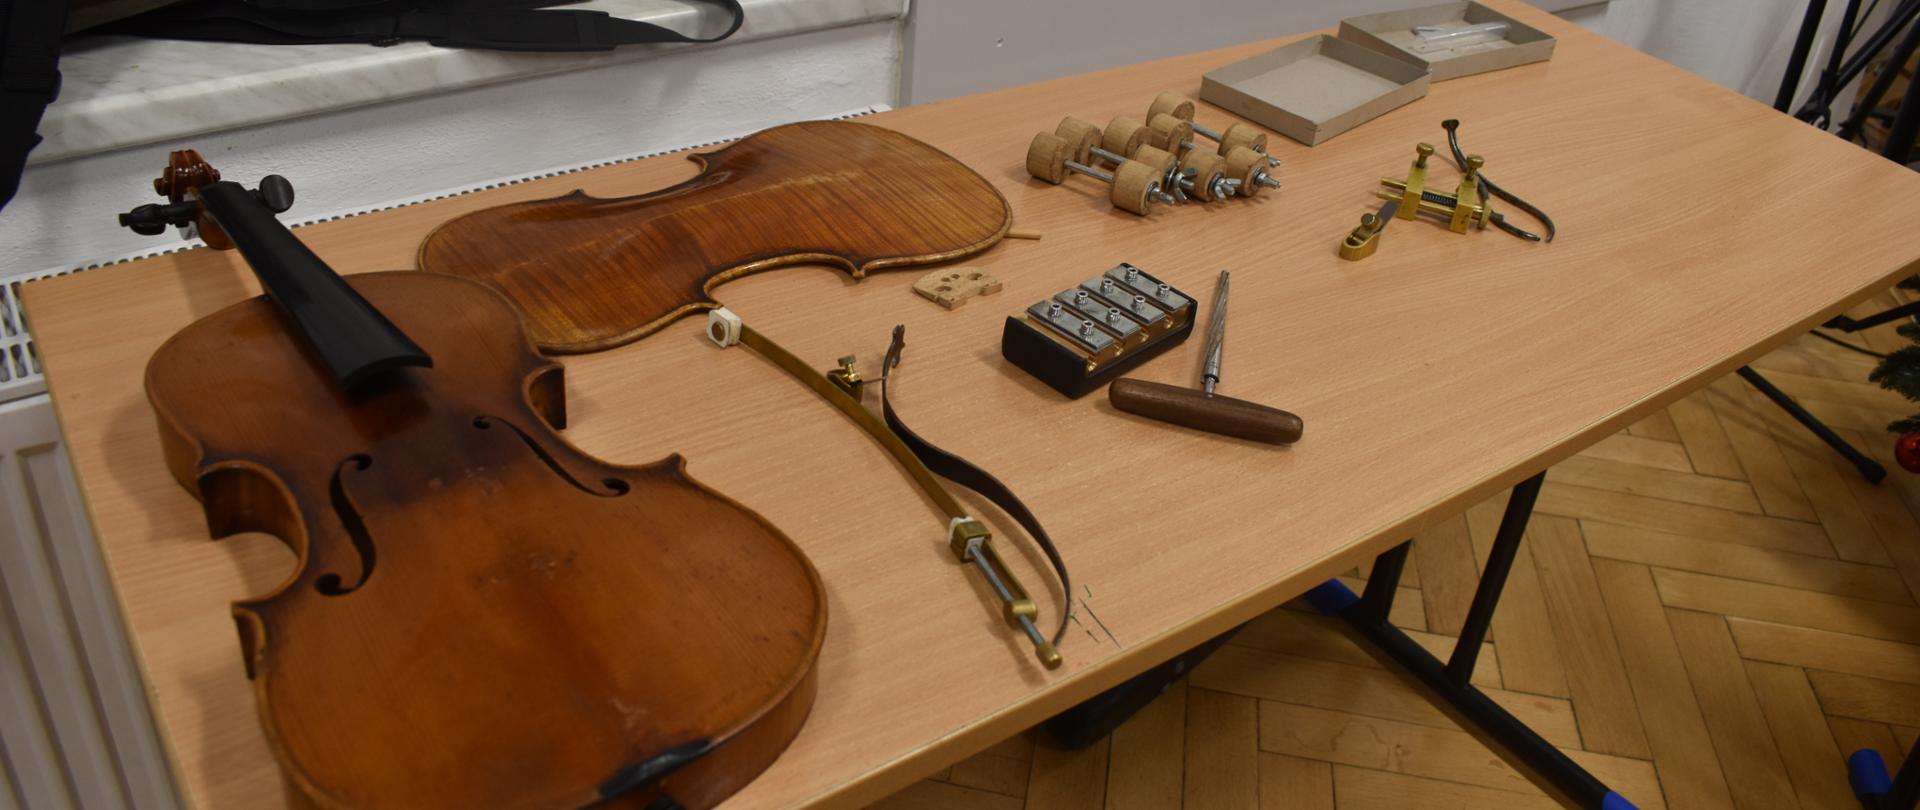 Na zdjęciu, na ławce szkolnej widnieją rozklejone skrzypce oraz narzędzia lutnicze służące do renowacji skrzypiec. Kolorystyka zdjęcia jest brązowo-szara.